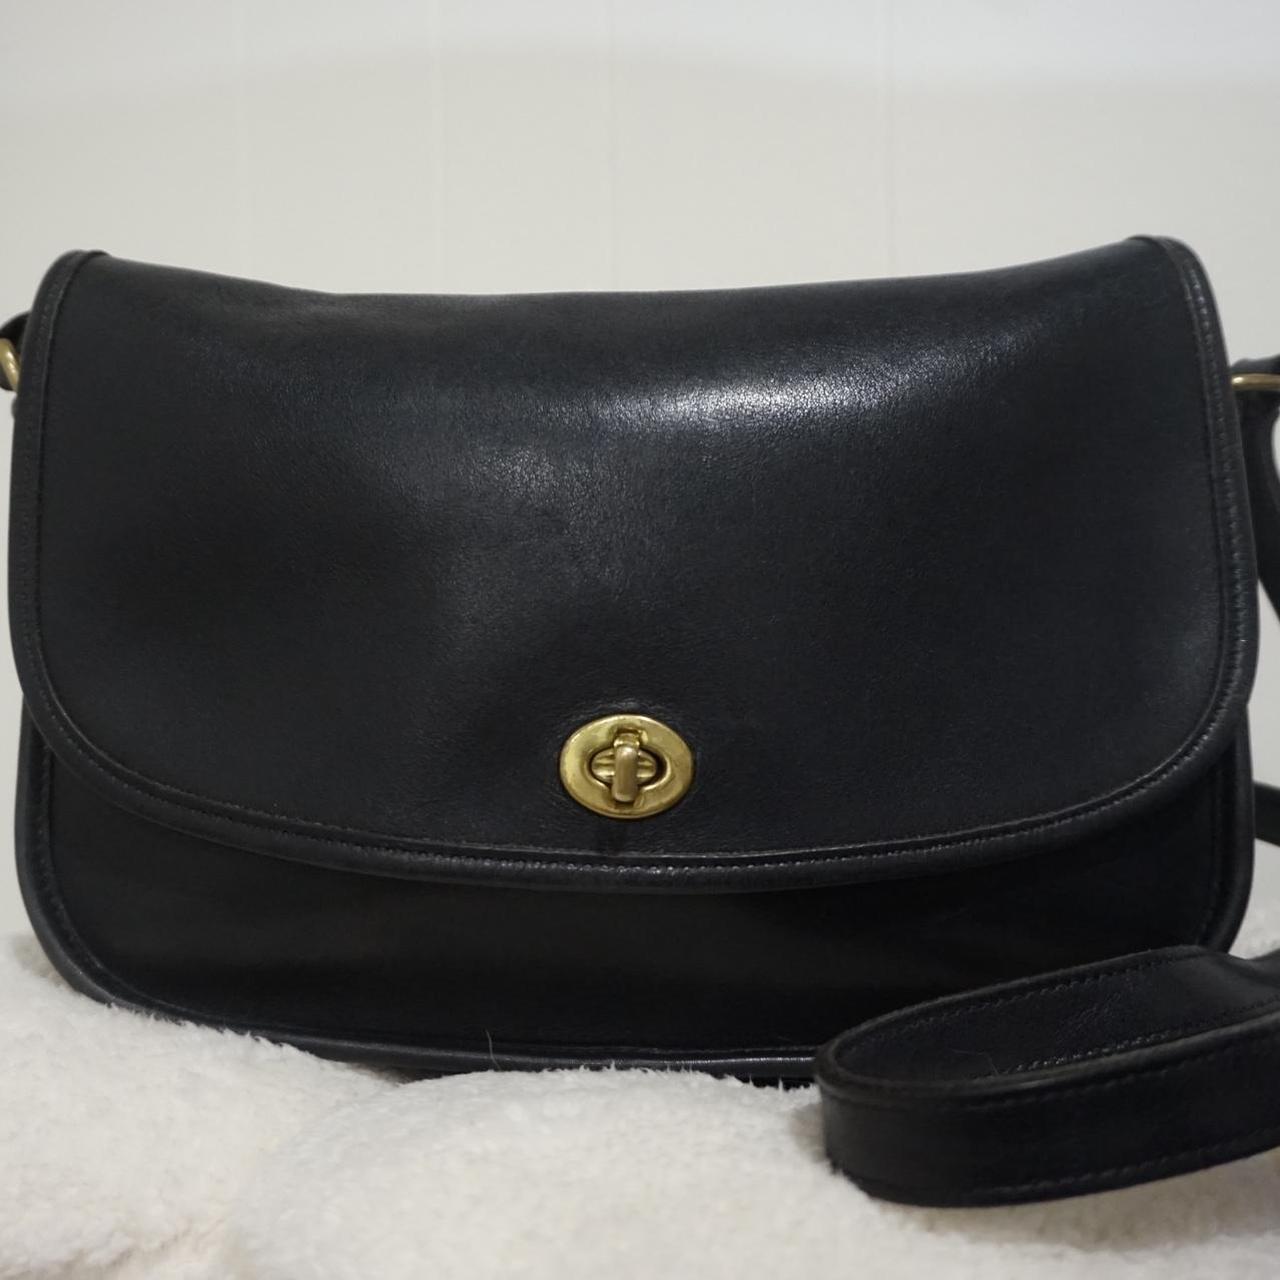 Vintage Coach black leather bag Gold hardware Long... - Depop